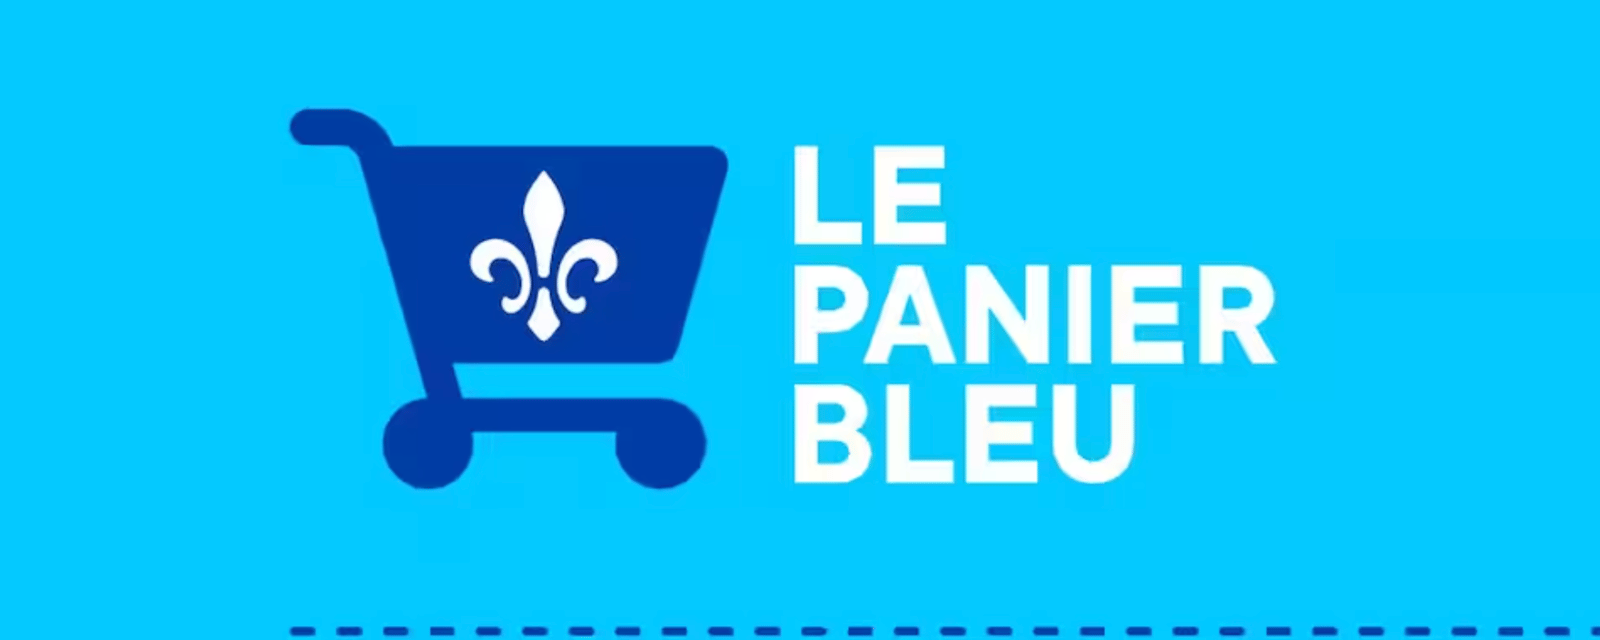 Seulement 600 produits sont certifiés Produits du Québec sur plus de 100 000 produits offerts sur le Panier bleu